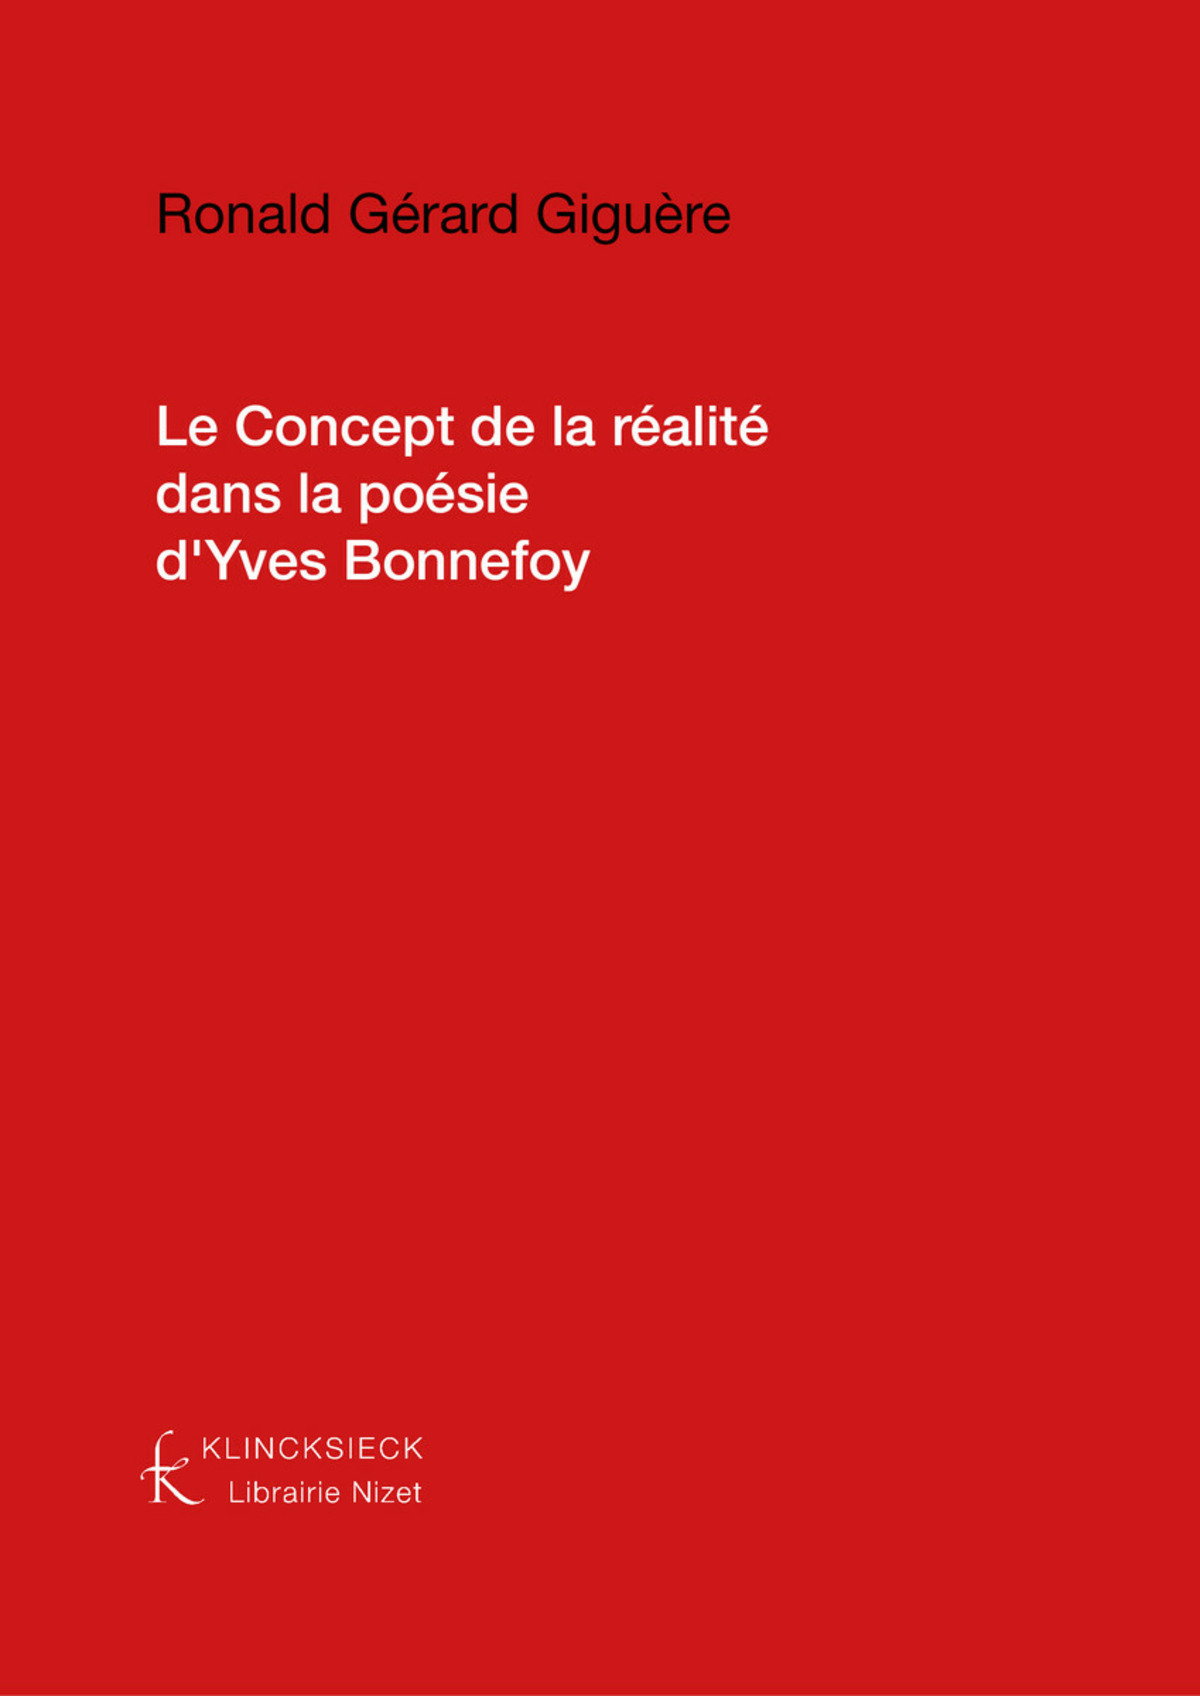 Le Concept de la réalité dans la poésie d'Yves Bonnefoy